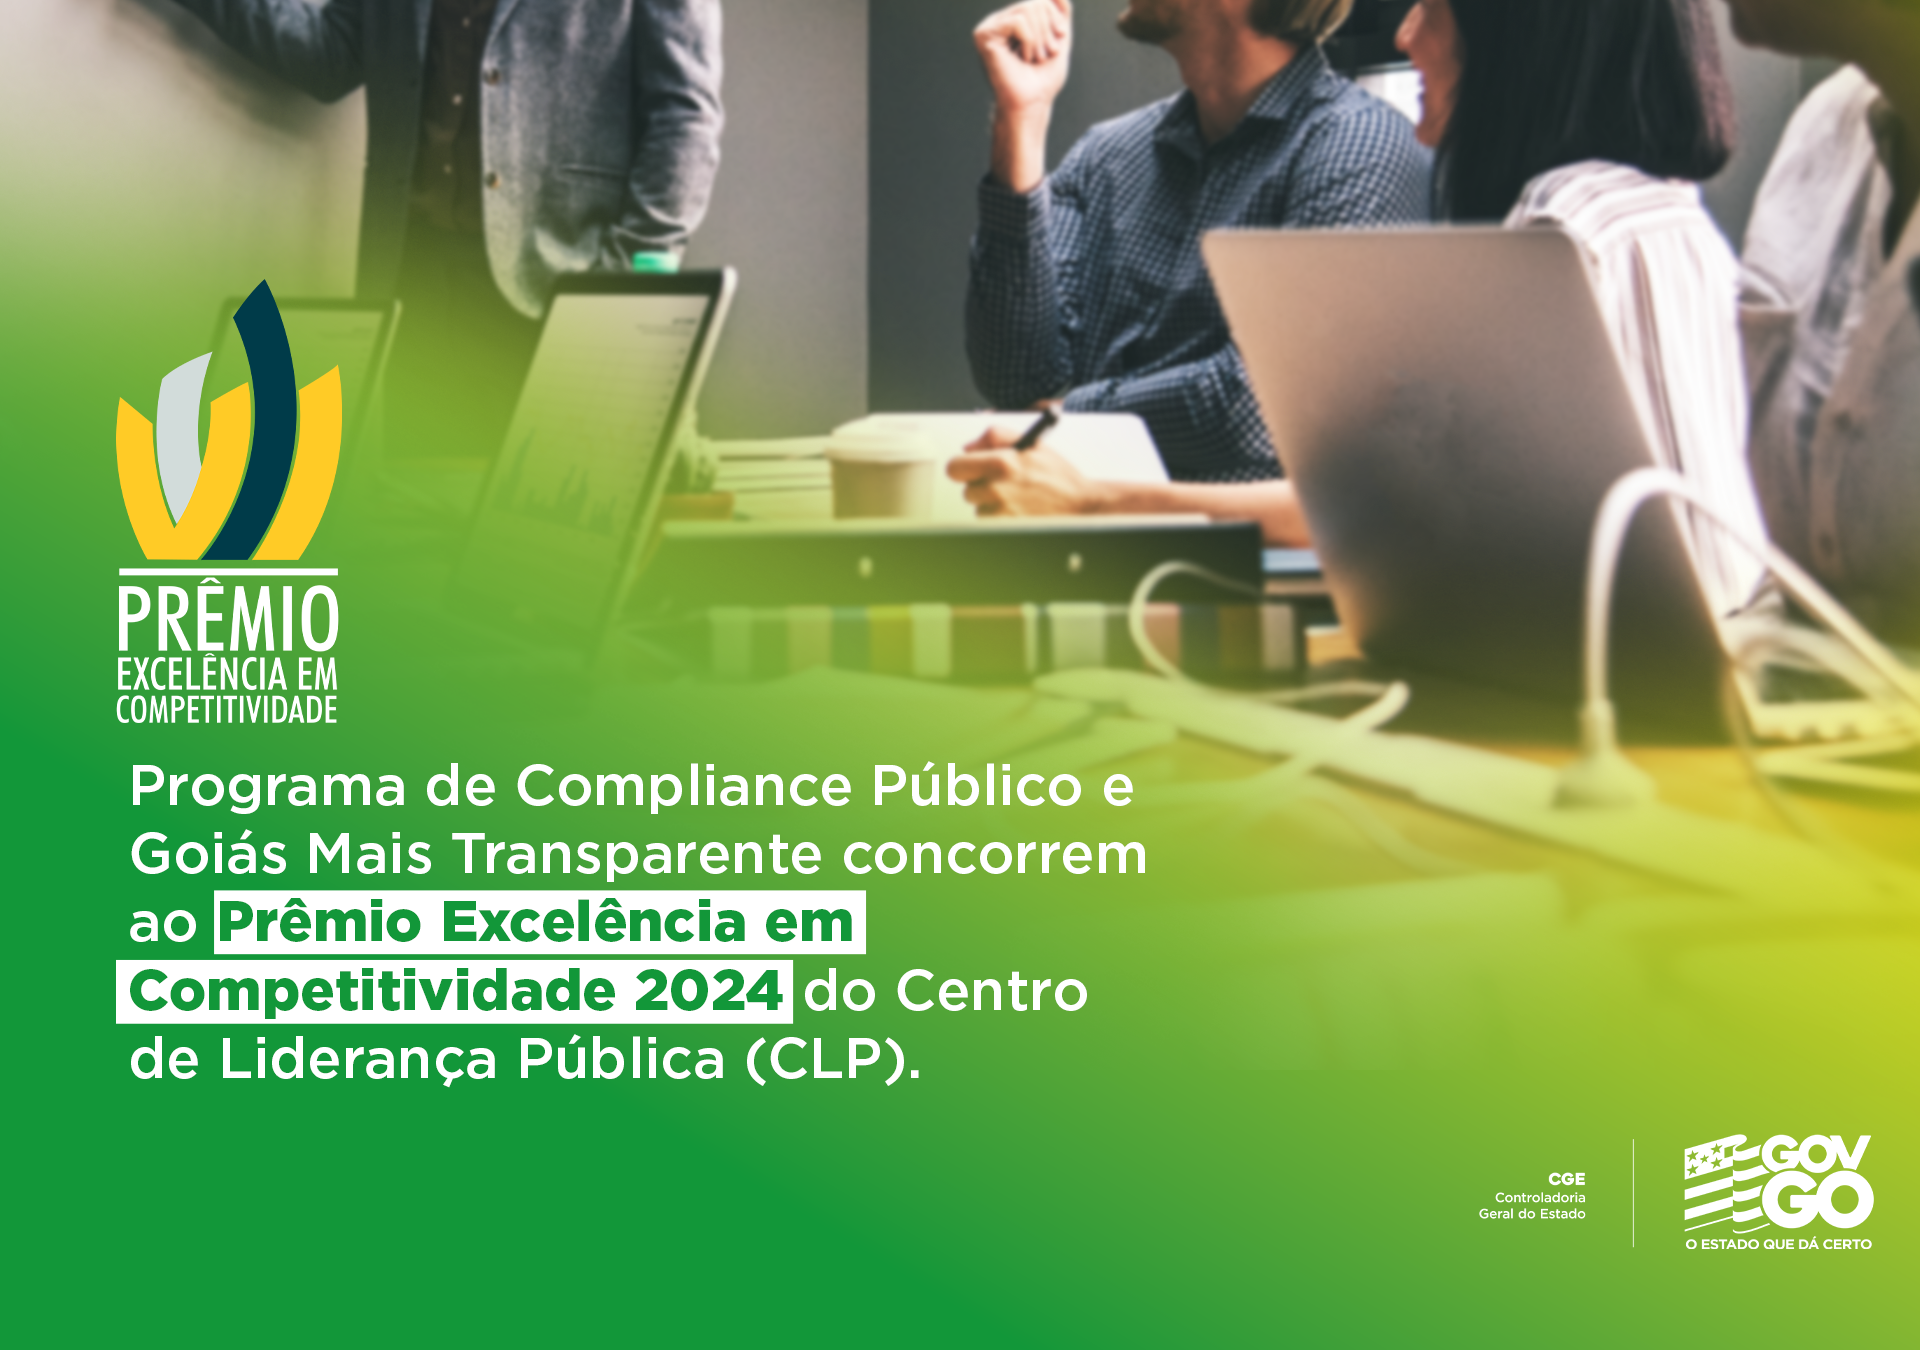 CGE e Governo de Goiás concorrem ao Prêmio Excelência em Competitividade 2024